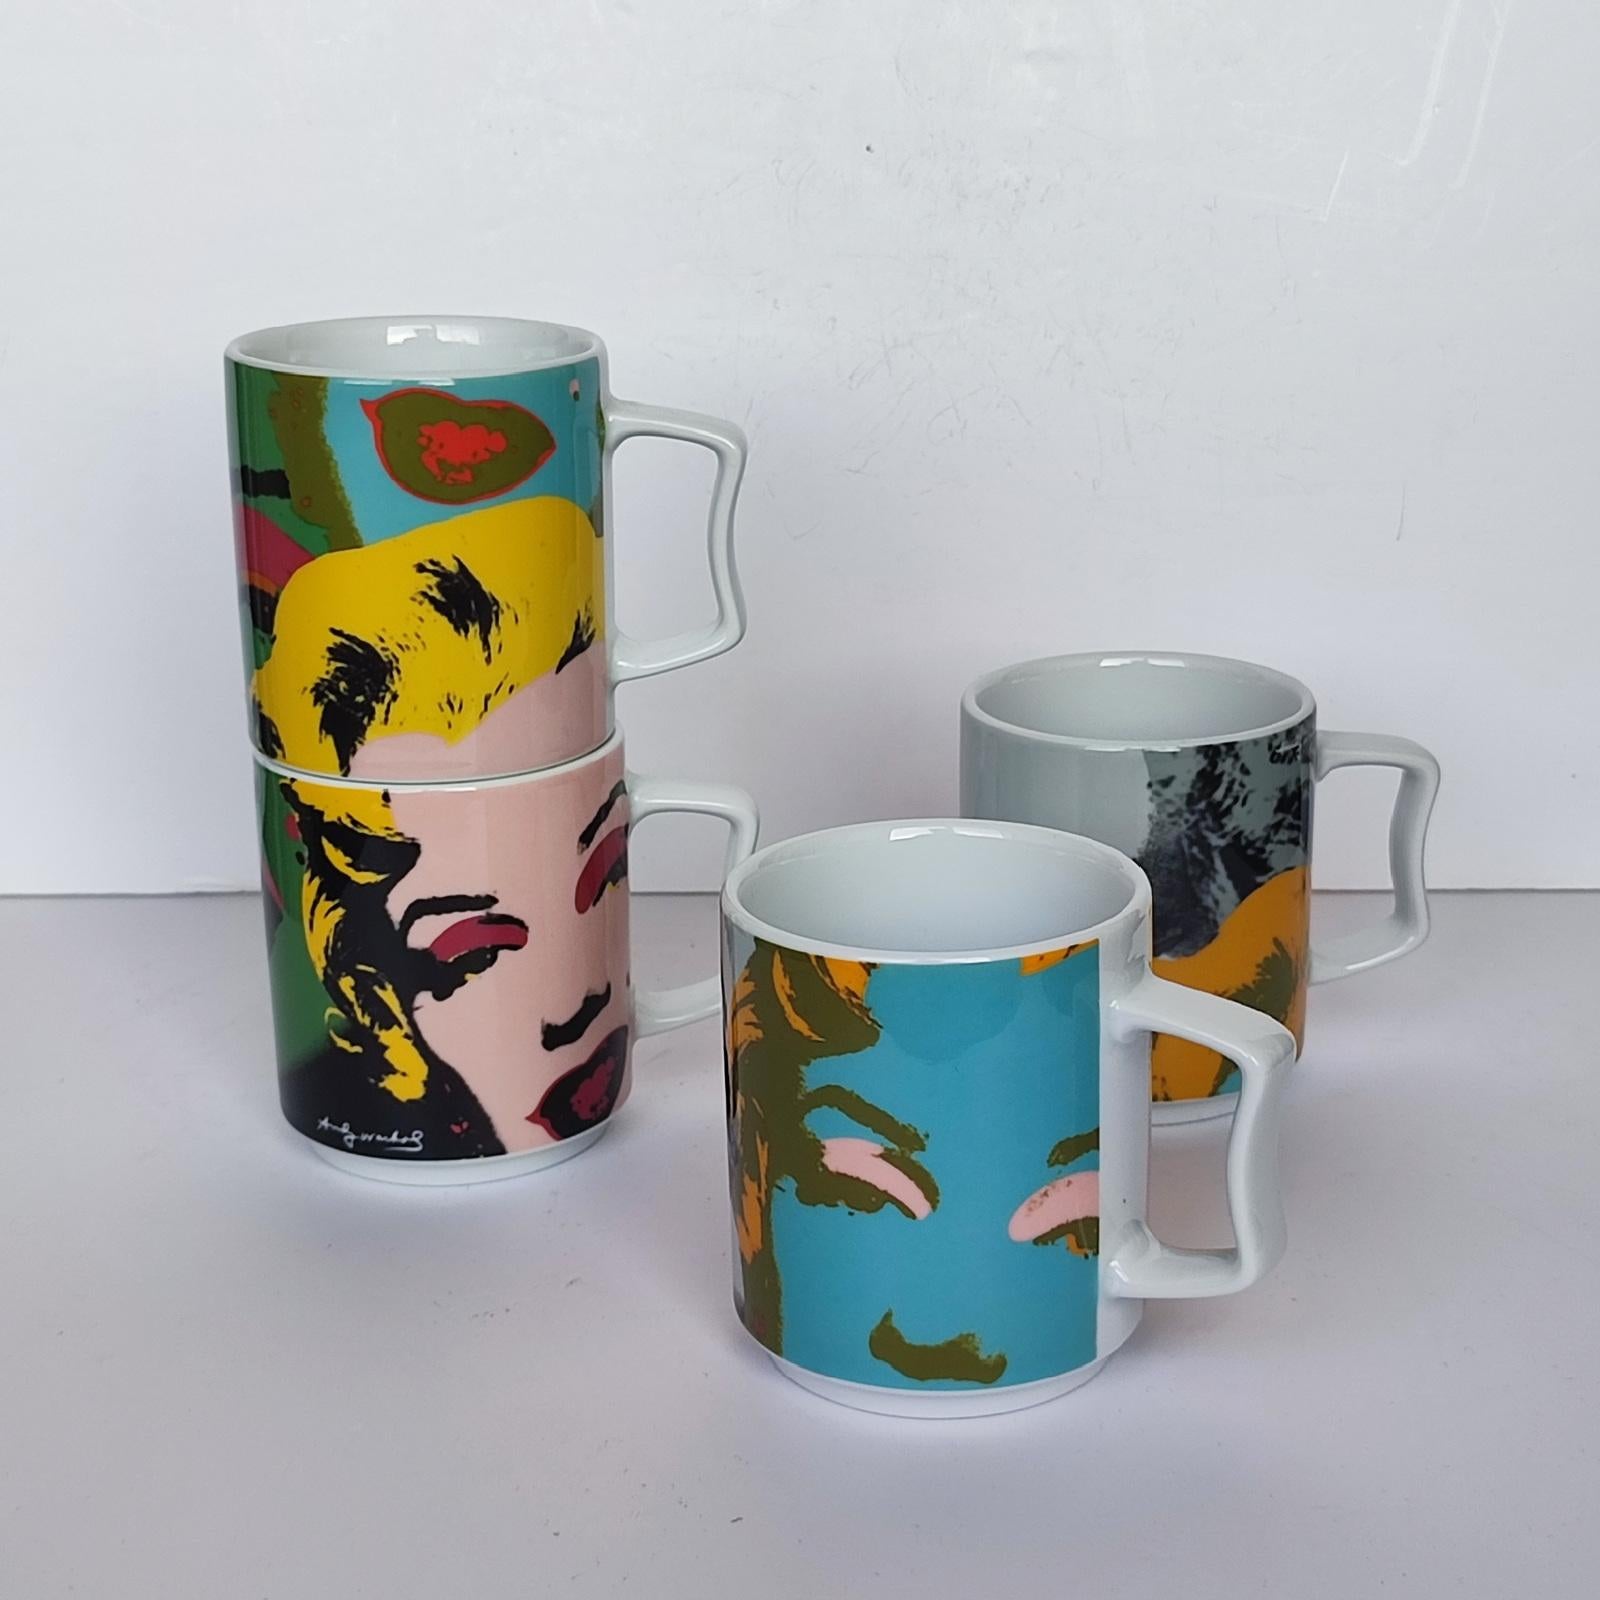 German Andy Warhol Marilyn Monroe Rosenthal Studio Line Stacking Mug Set, FREE SHIPPING